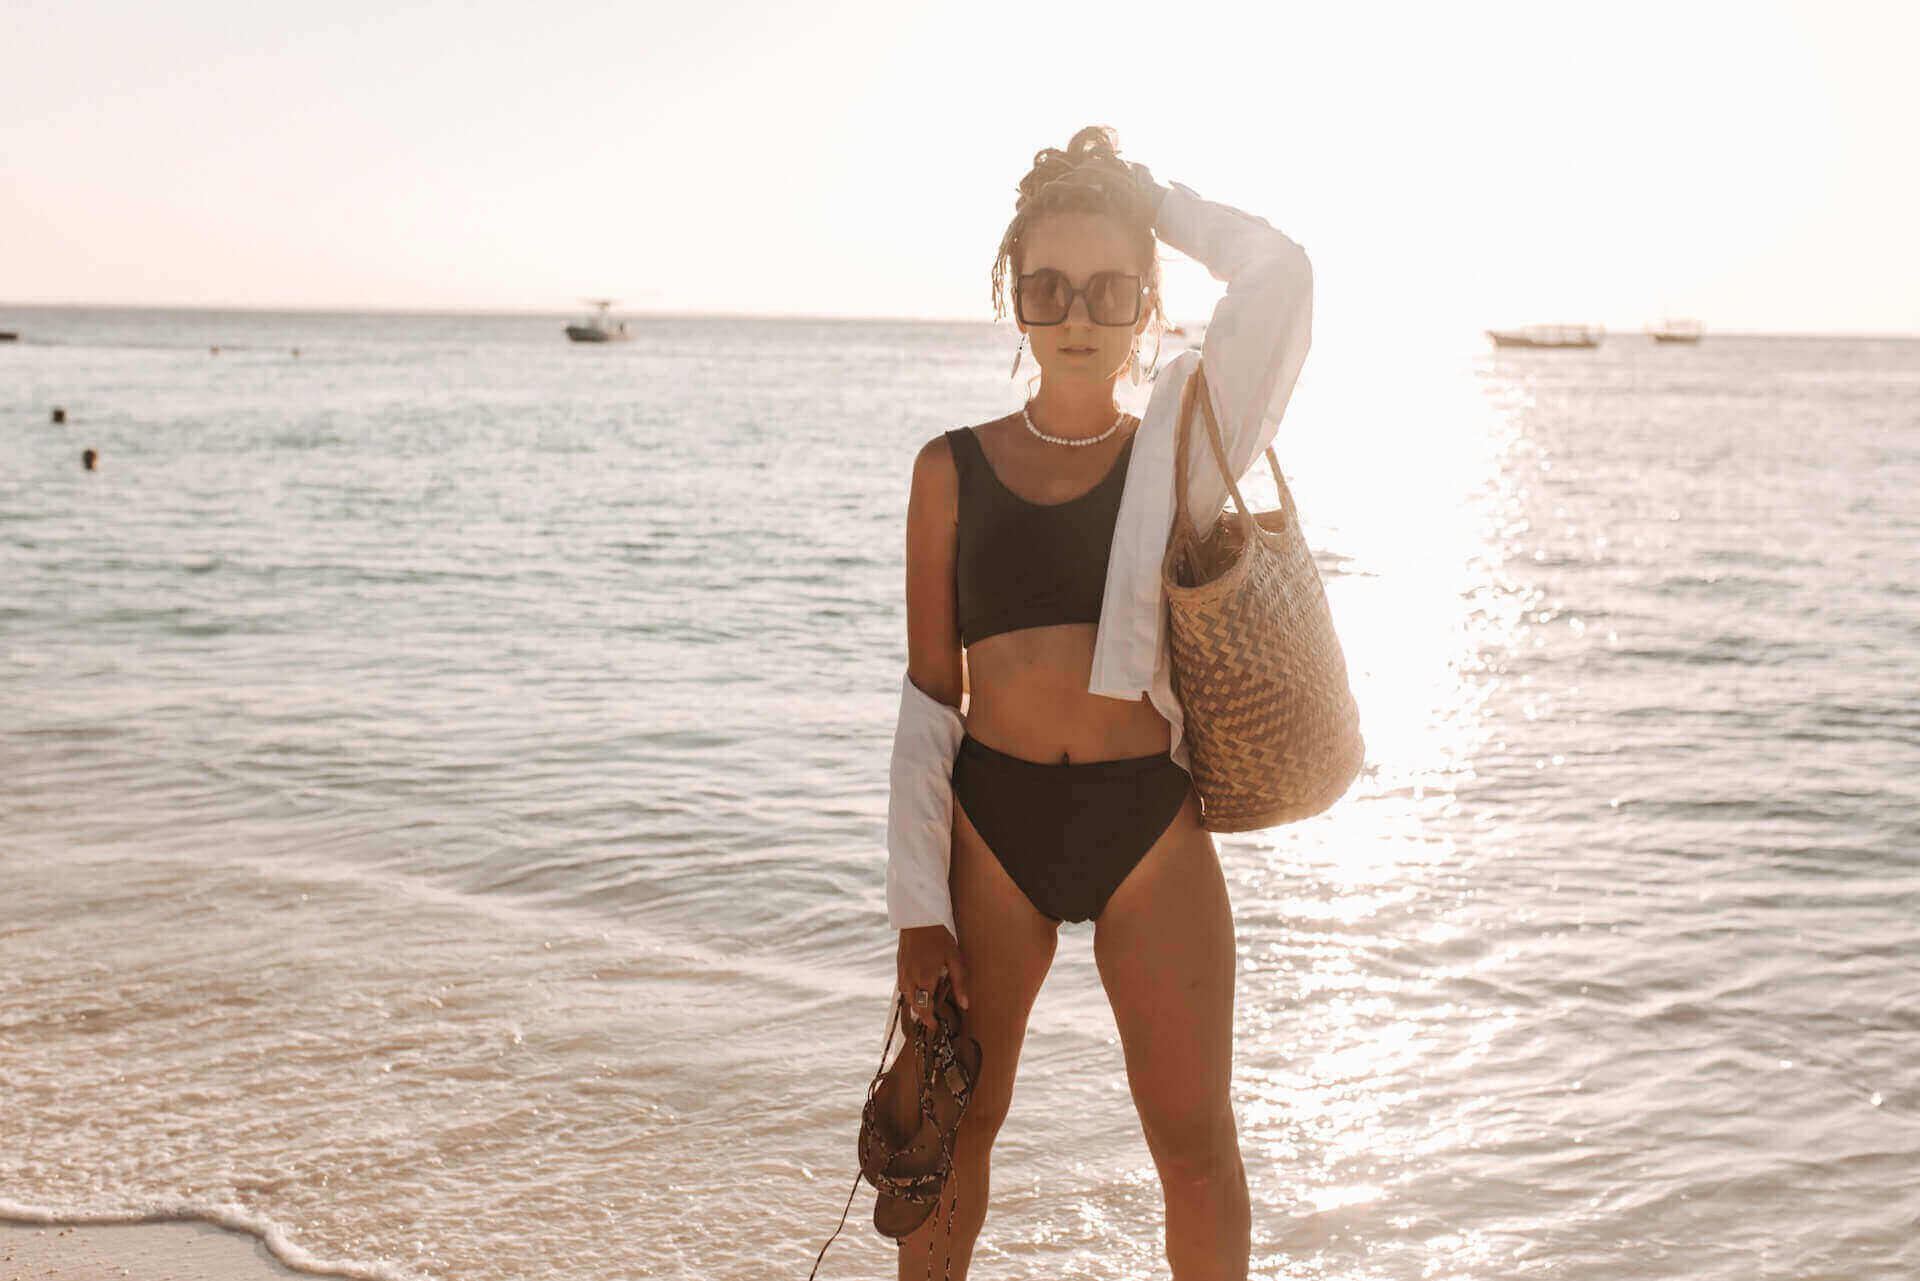 Woman in a bikini at the beach